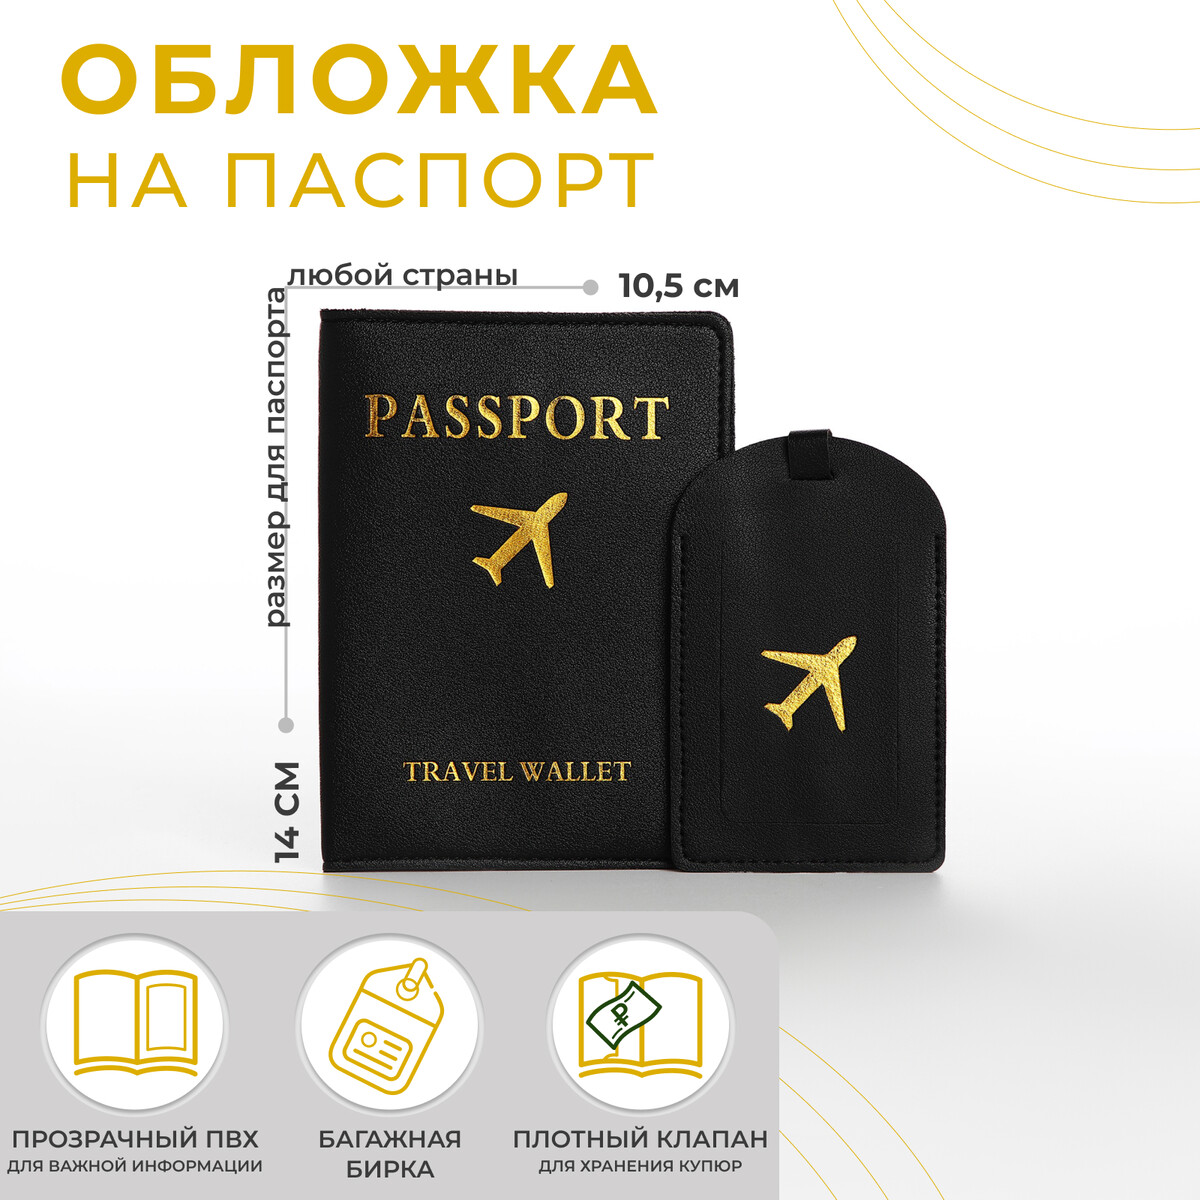 Обложка для паспорта, багажная бирка, цвет черный